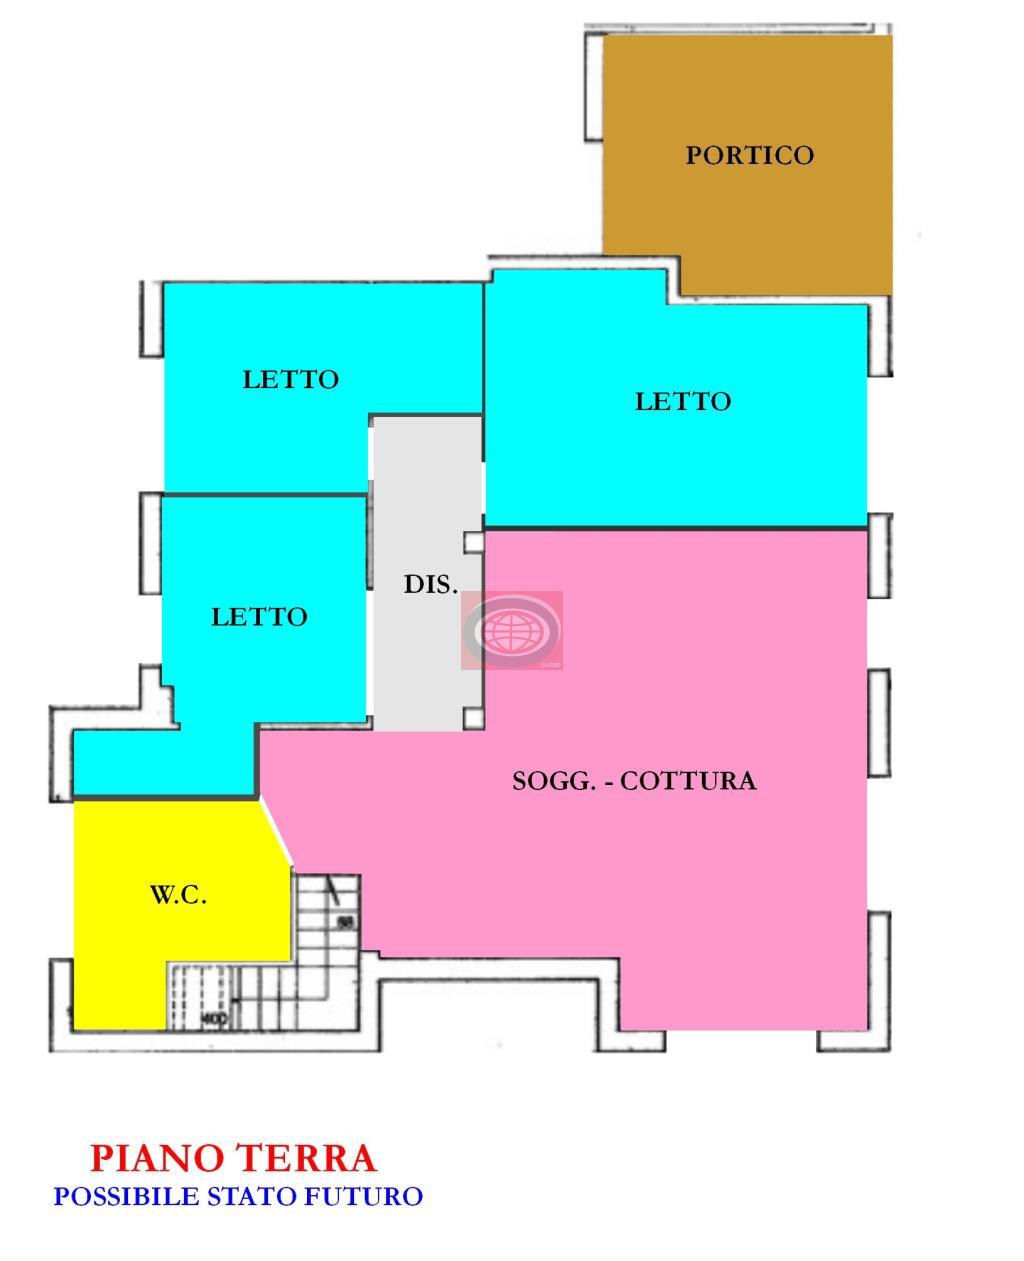 VIGNE (NC46) - Negozio/bar per cambio destinazione d'uso in appartamento, con tre camere da letto, tre bagni, ampia zona giorno.